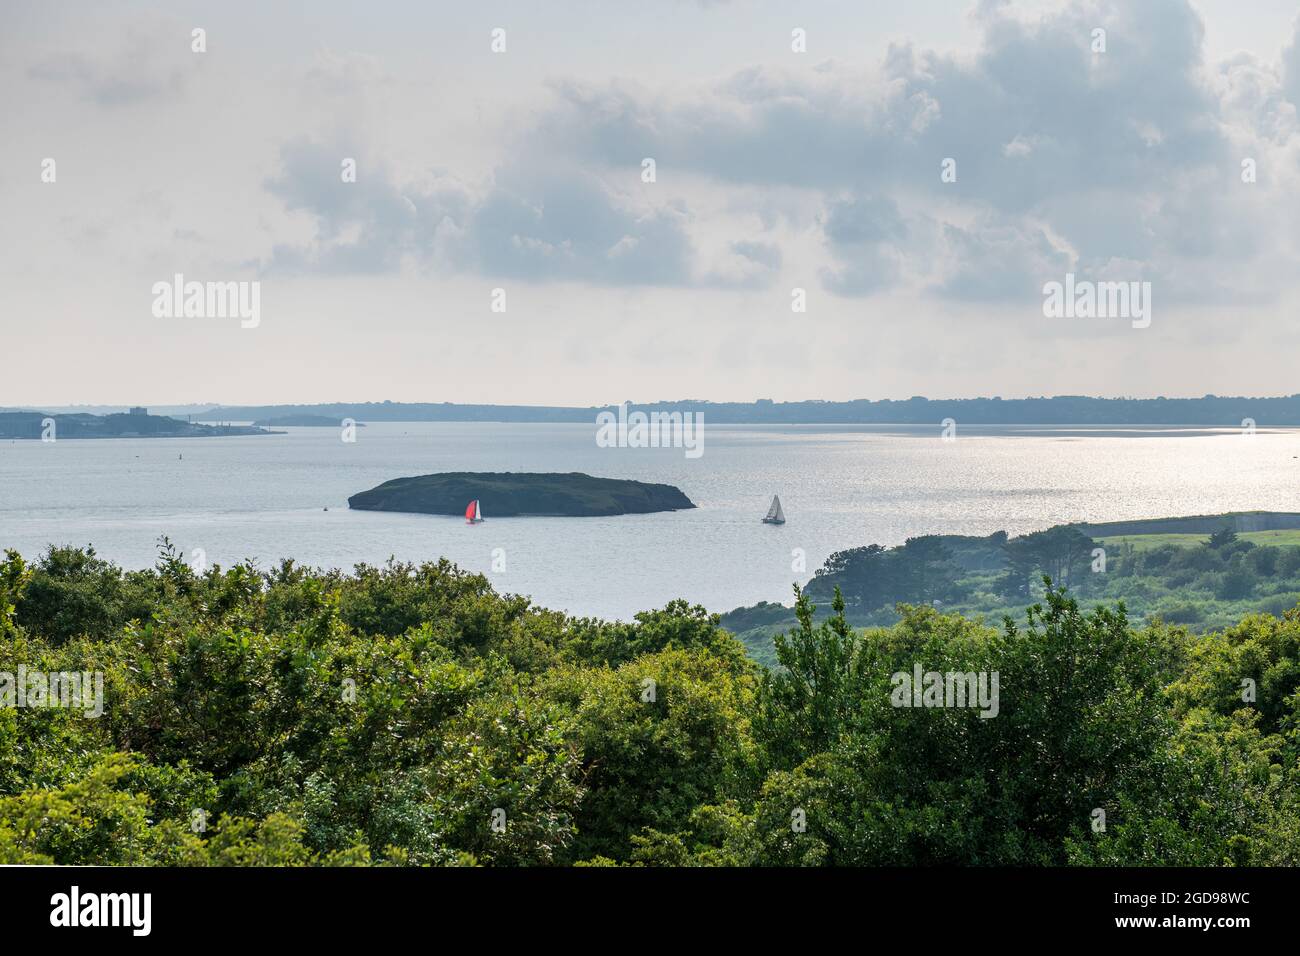 L'île ronde au large de la pointe d'Armorique, France, Finistère Stock Photo